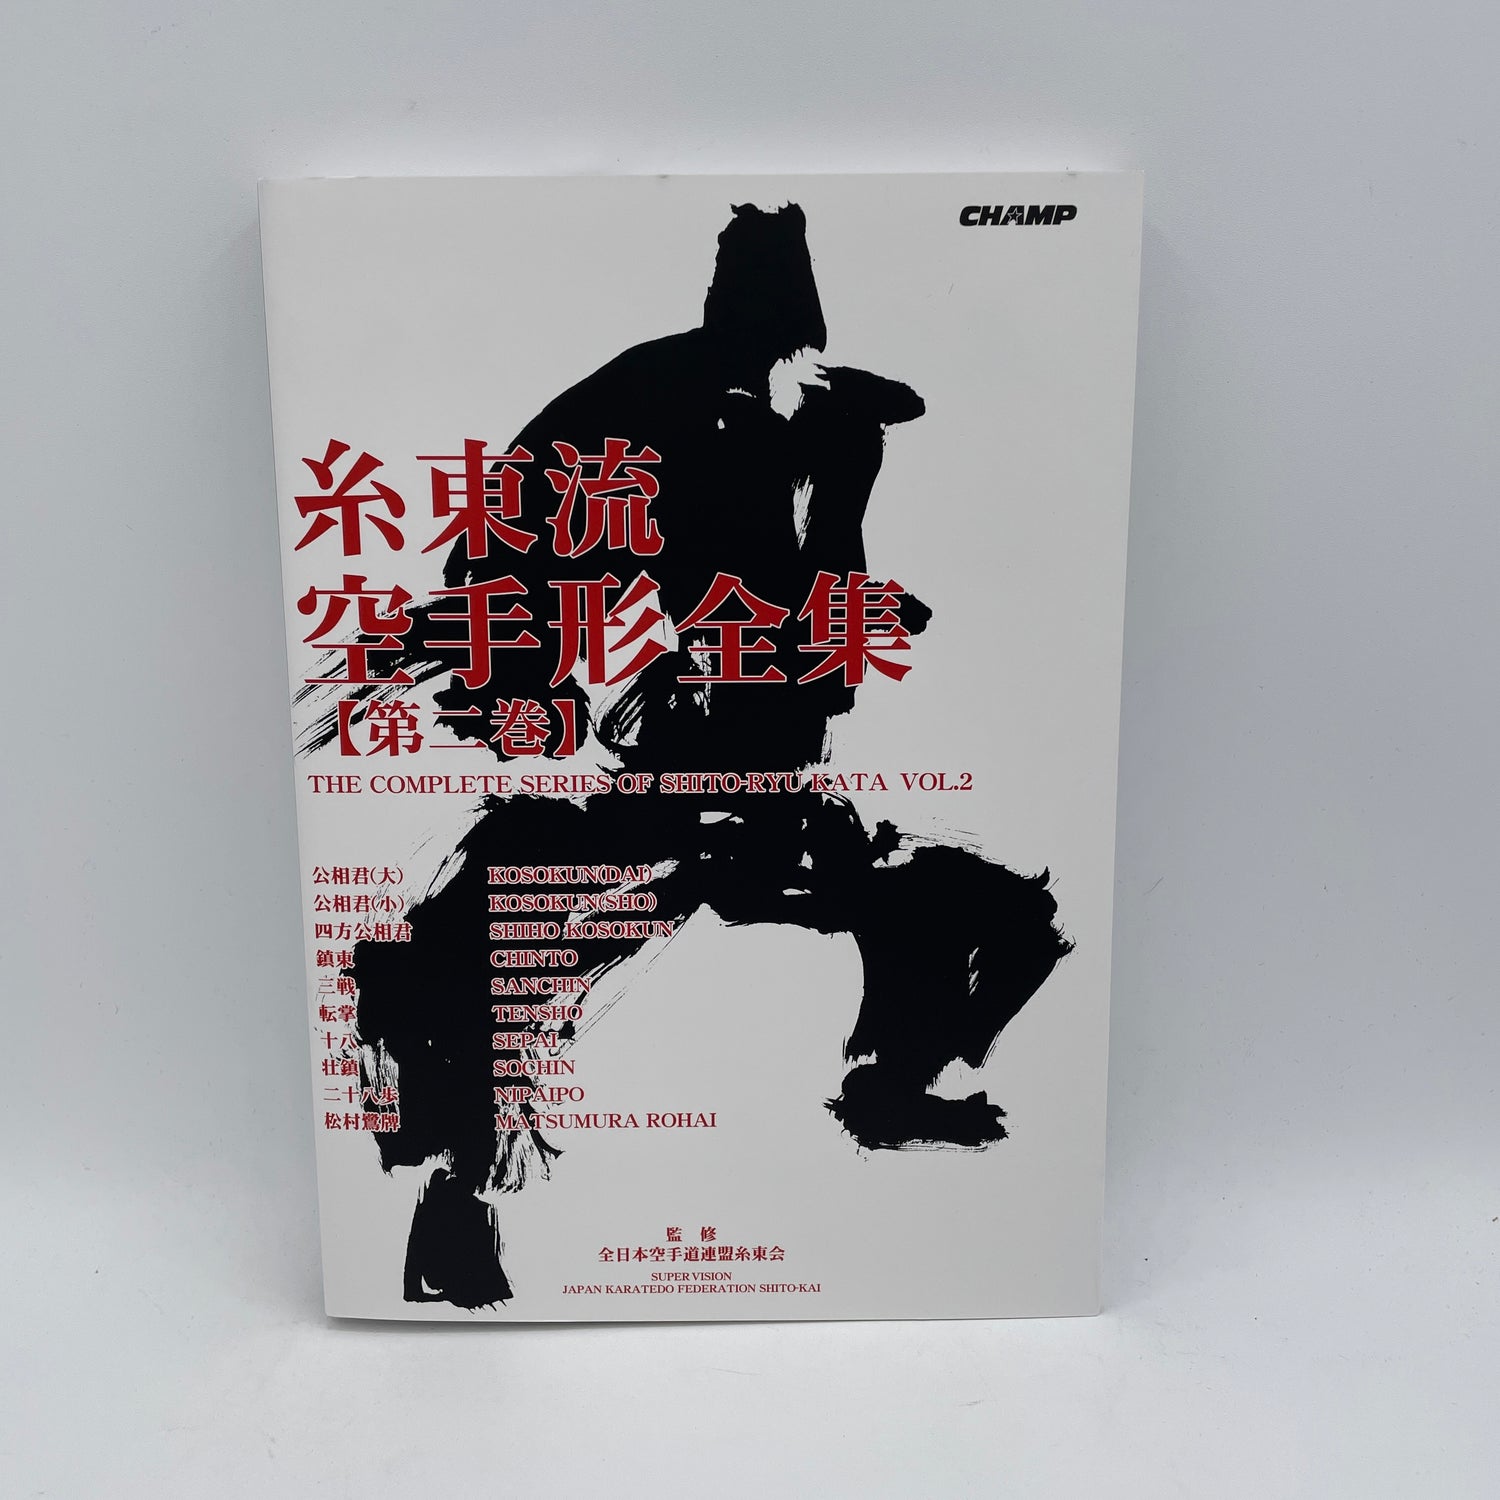 Serie completa de Shito Ryu Kata Libro 2